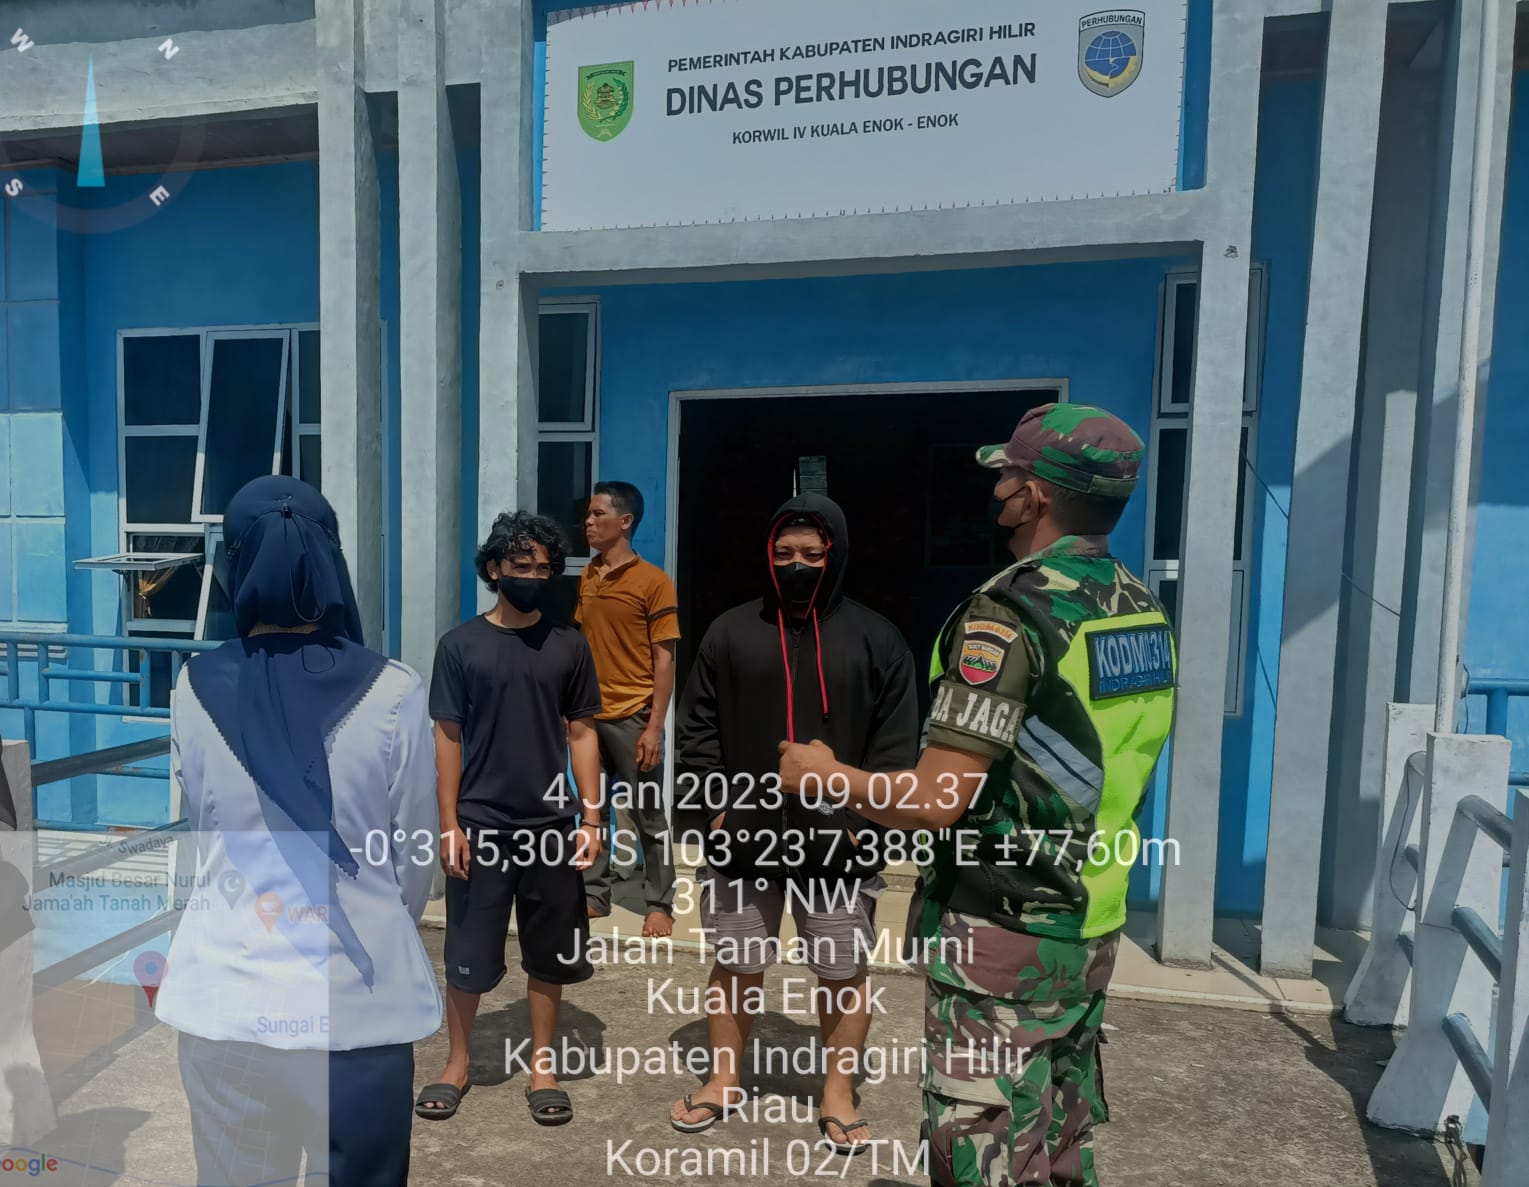 Kopda M Adrian Anggota Koramil 02/TM Laksanakan Himbauan Protkes di Pelabuhan Dinas Perhubungan Kuala Enok 